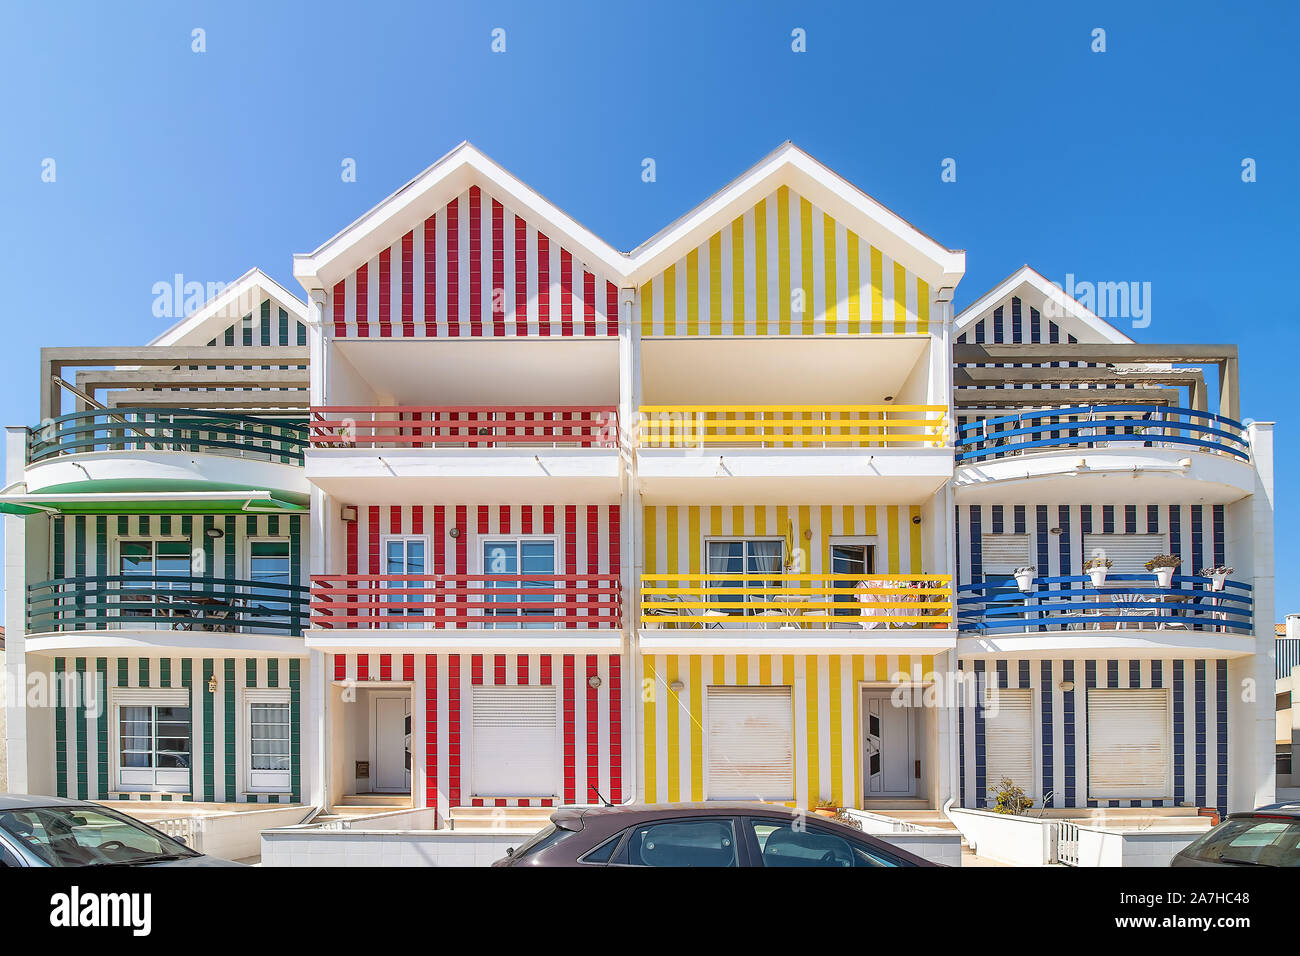 Rue avec ses maisons colorées à Costa Nova, Aveiro, Portugal. Rue avec maisons à rayures, Costa Nova, Aveiro, Portugal. Façades de maisons colorées en C Banque D'Images